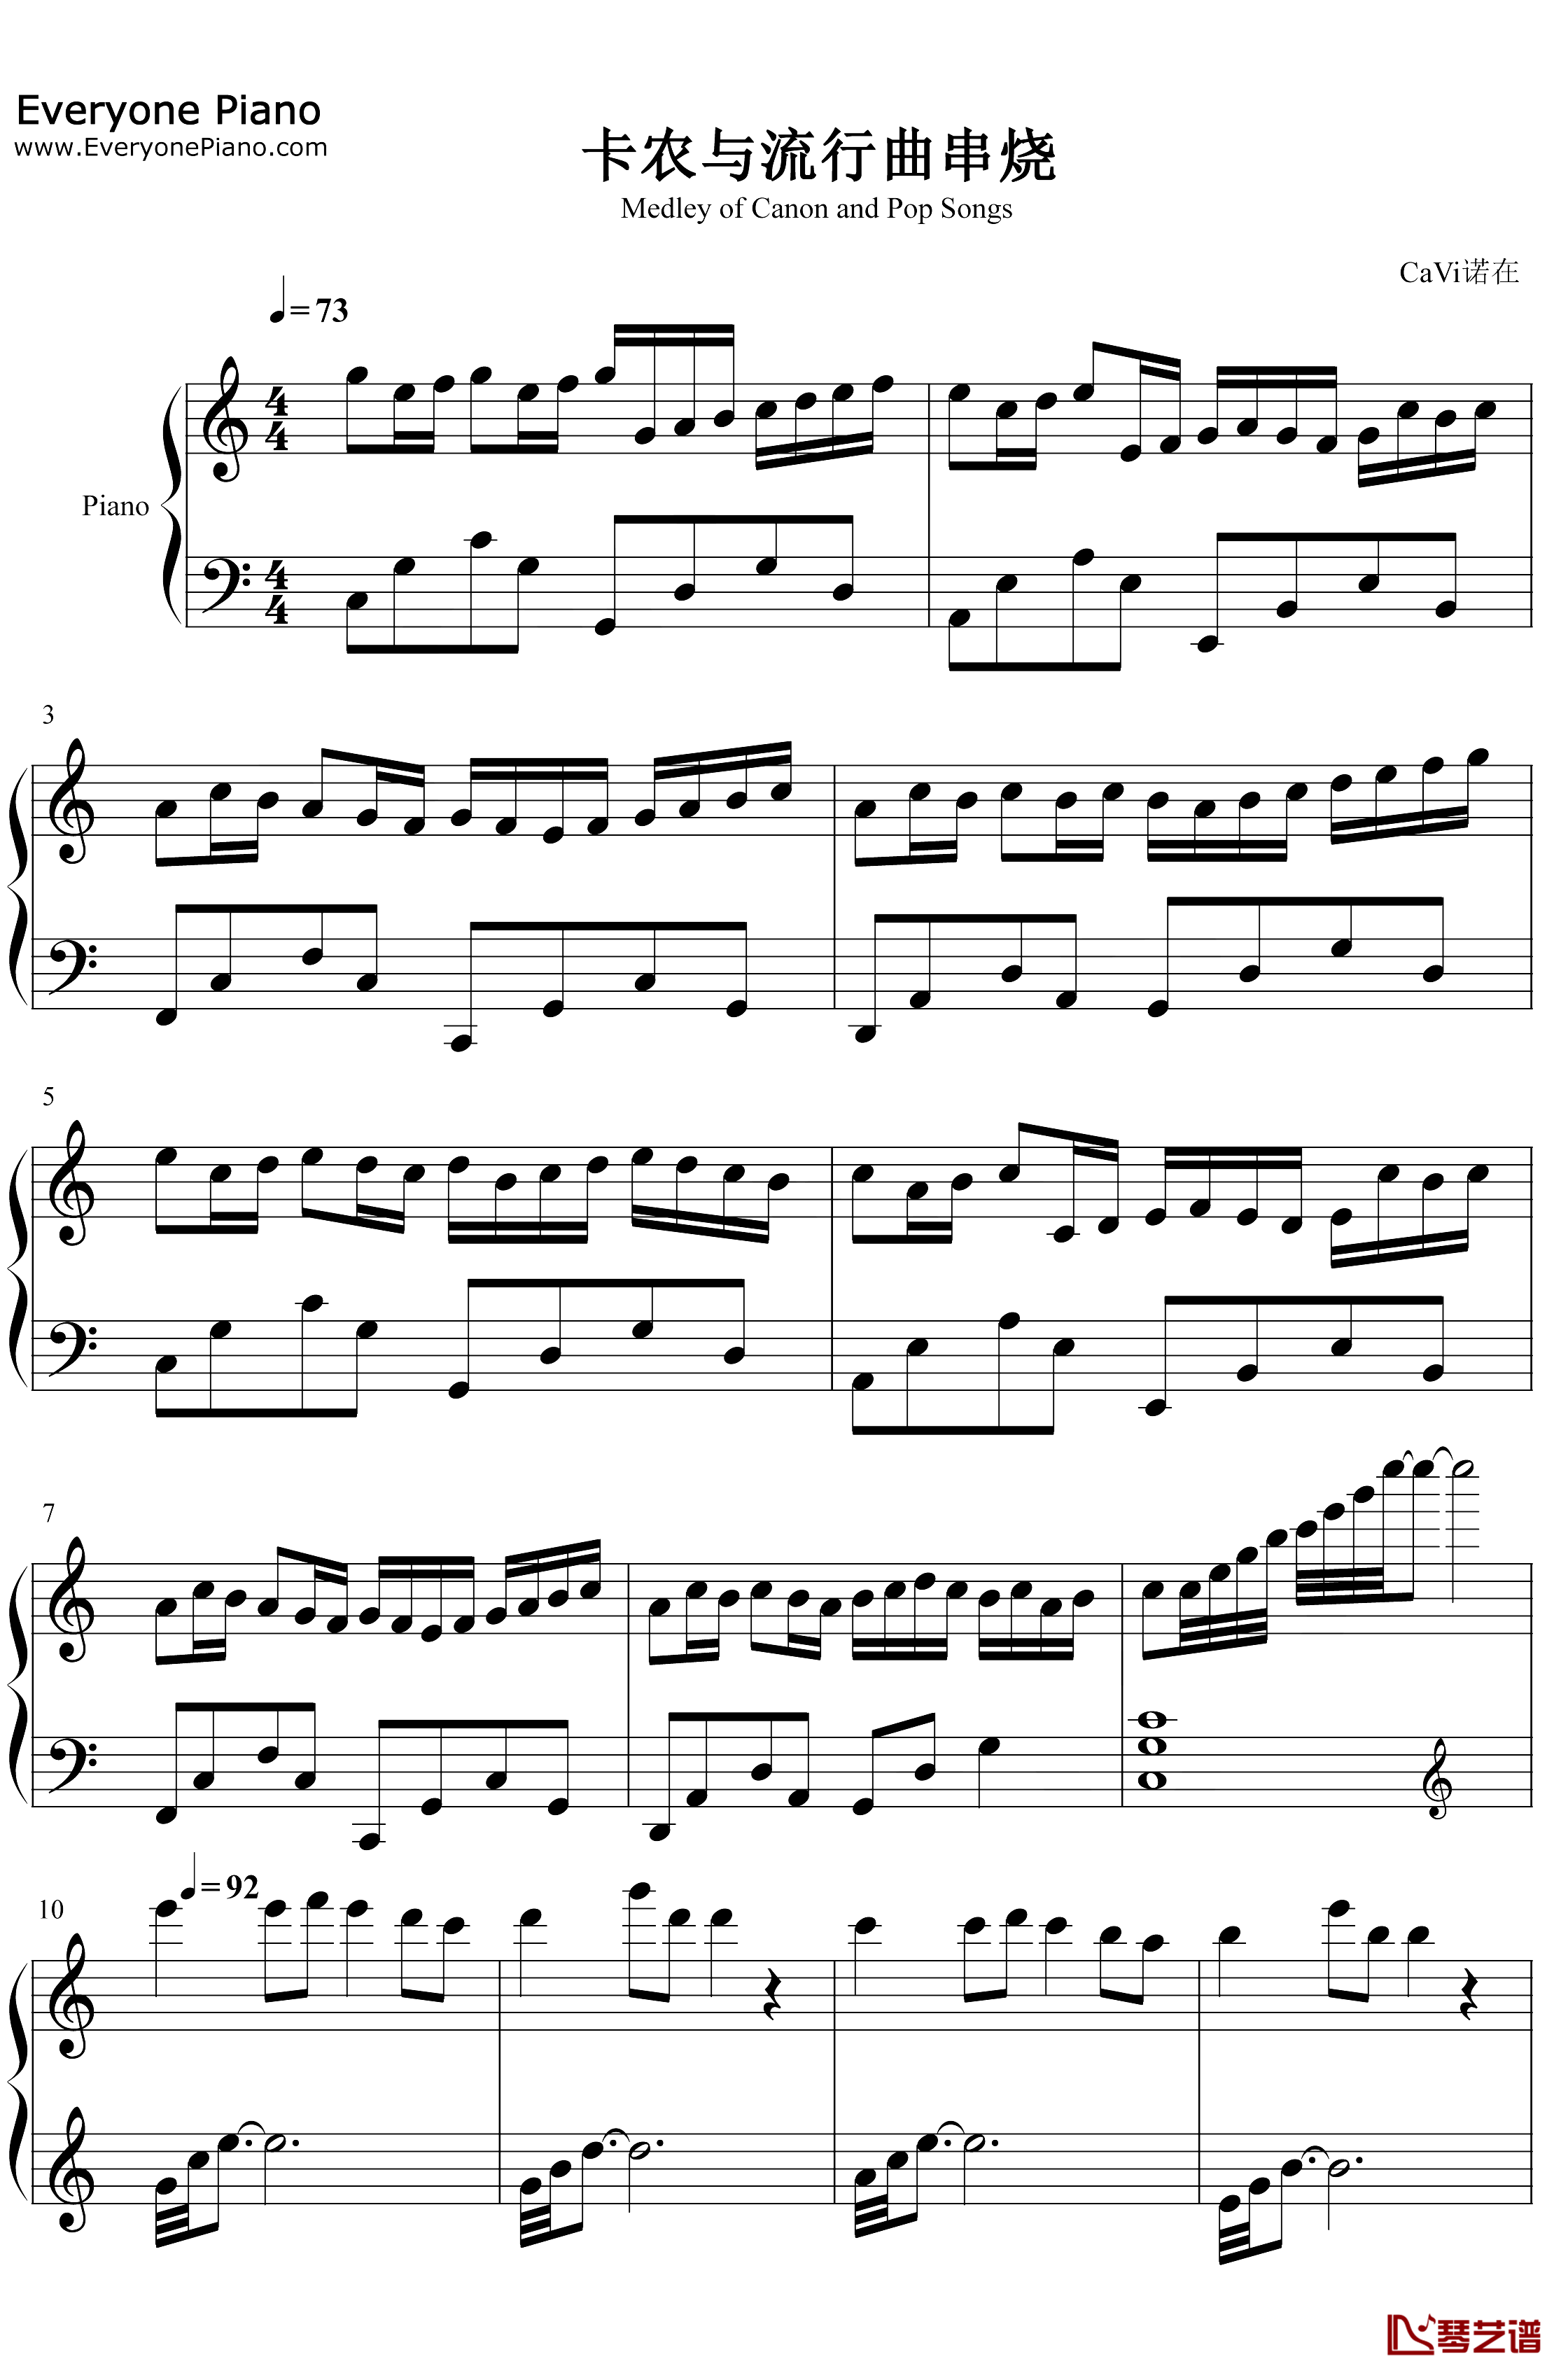 卡农与流行曲串烧钢琴谱-未知-无缝衔接完美版1